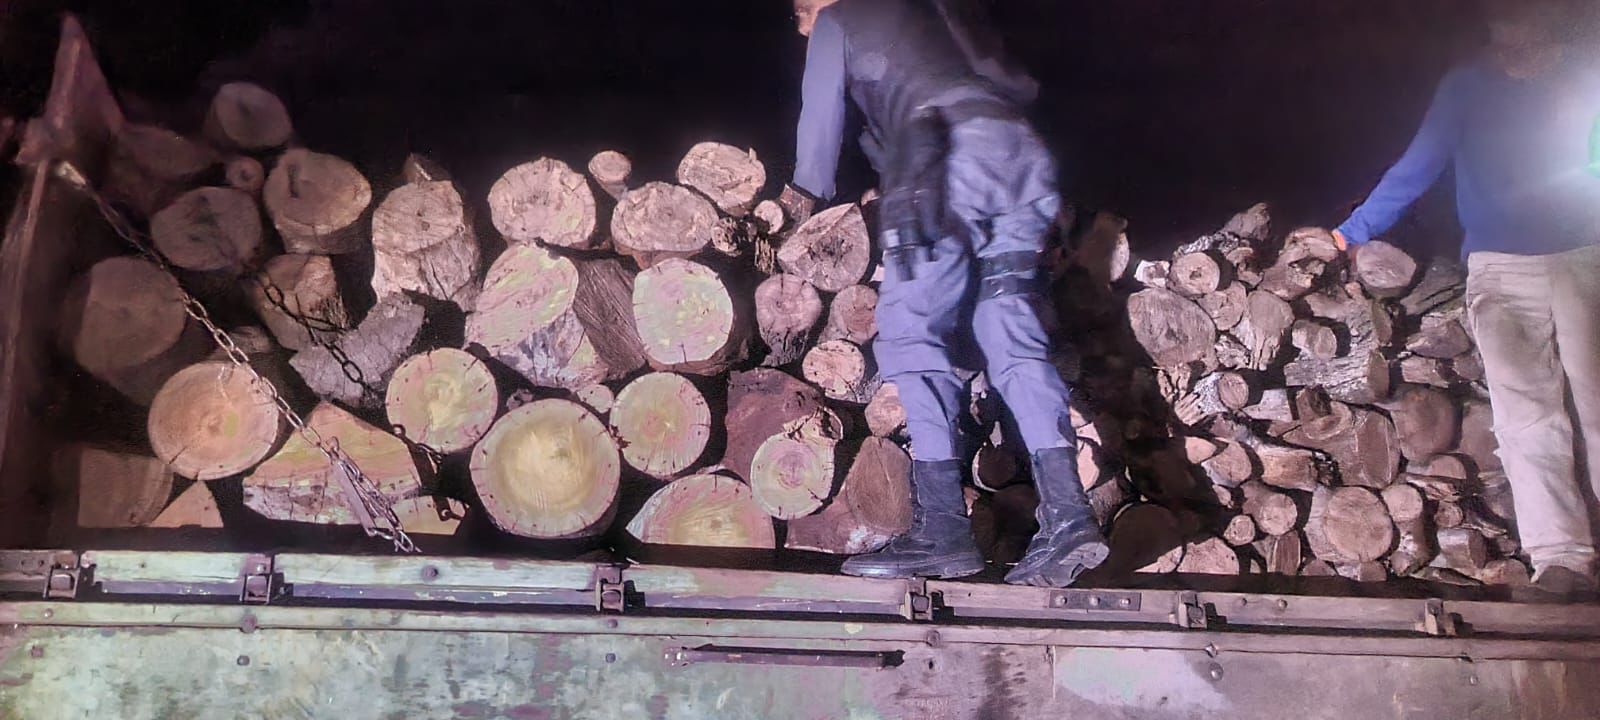 Photo of Nova Xavantina – PM prende três homens e apreende caminhão carregado com madeira irregular